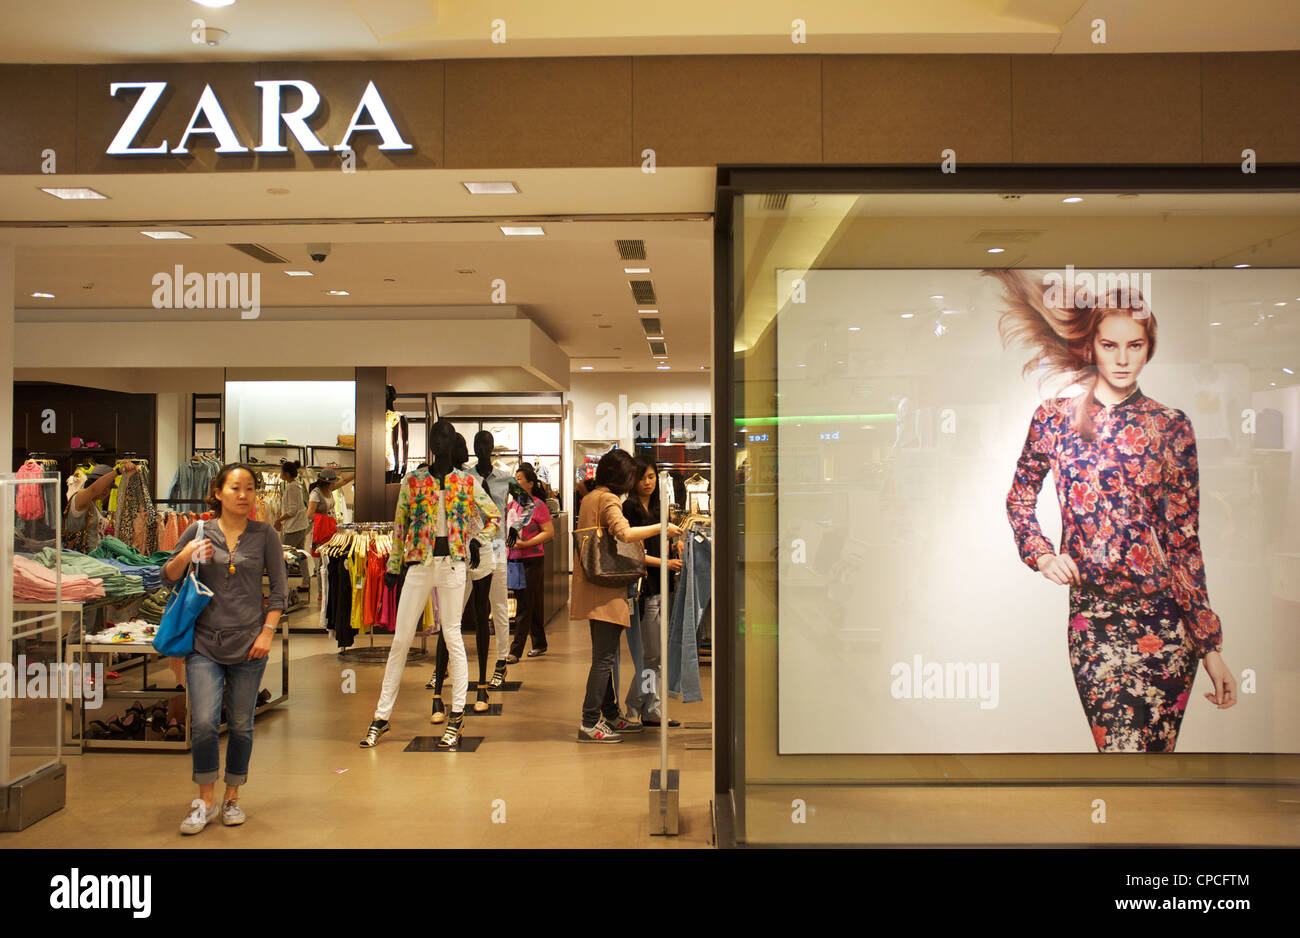 9 Trucos de la tienda Zara, por los que tienes un deseo desenfrenado de  comprar su ropa / Genial